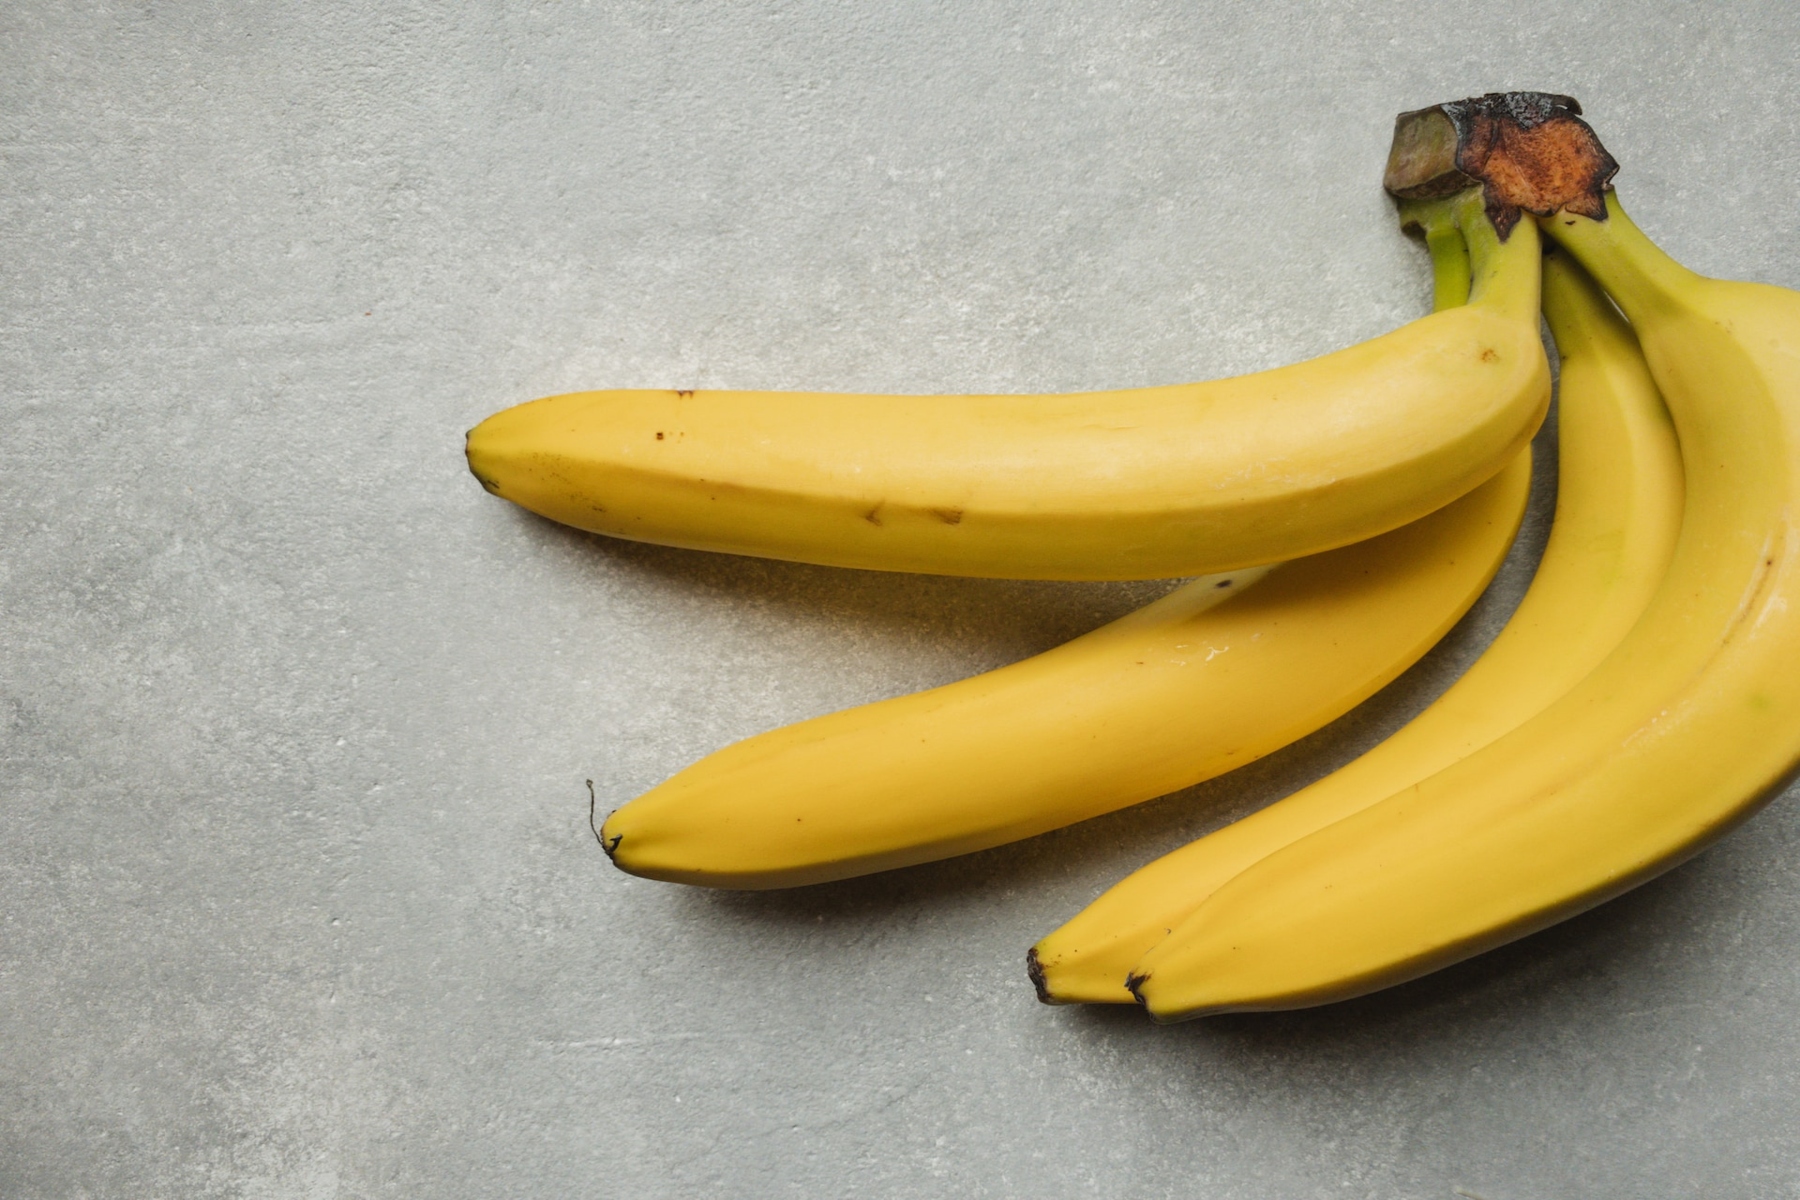 Τόνωση: Τροφές που θα σας τονώσουν τον οργανισμό όπως το μπανανόψωμο